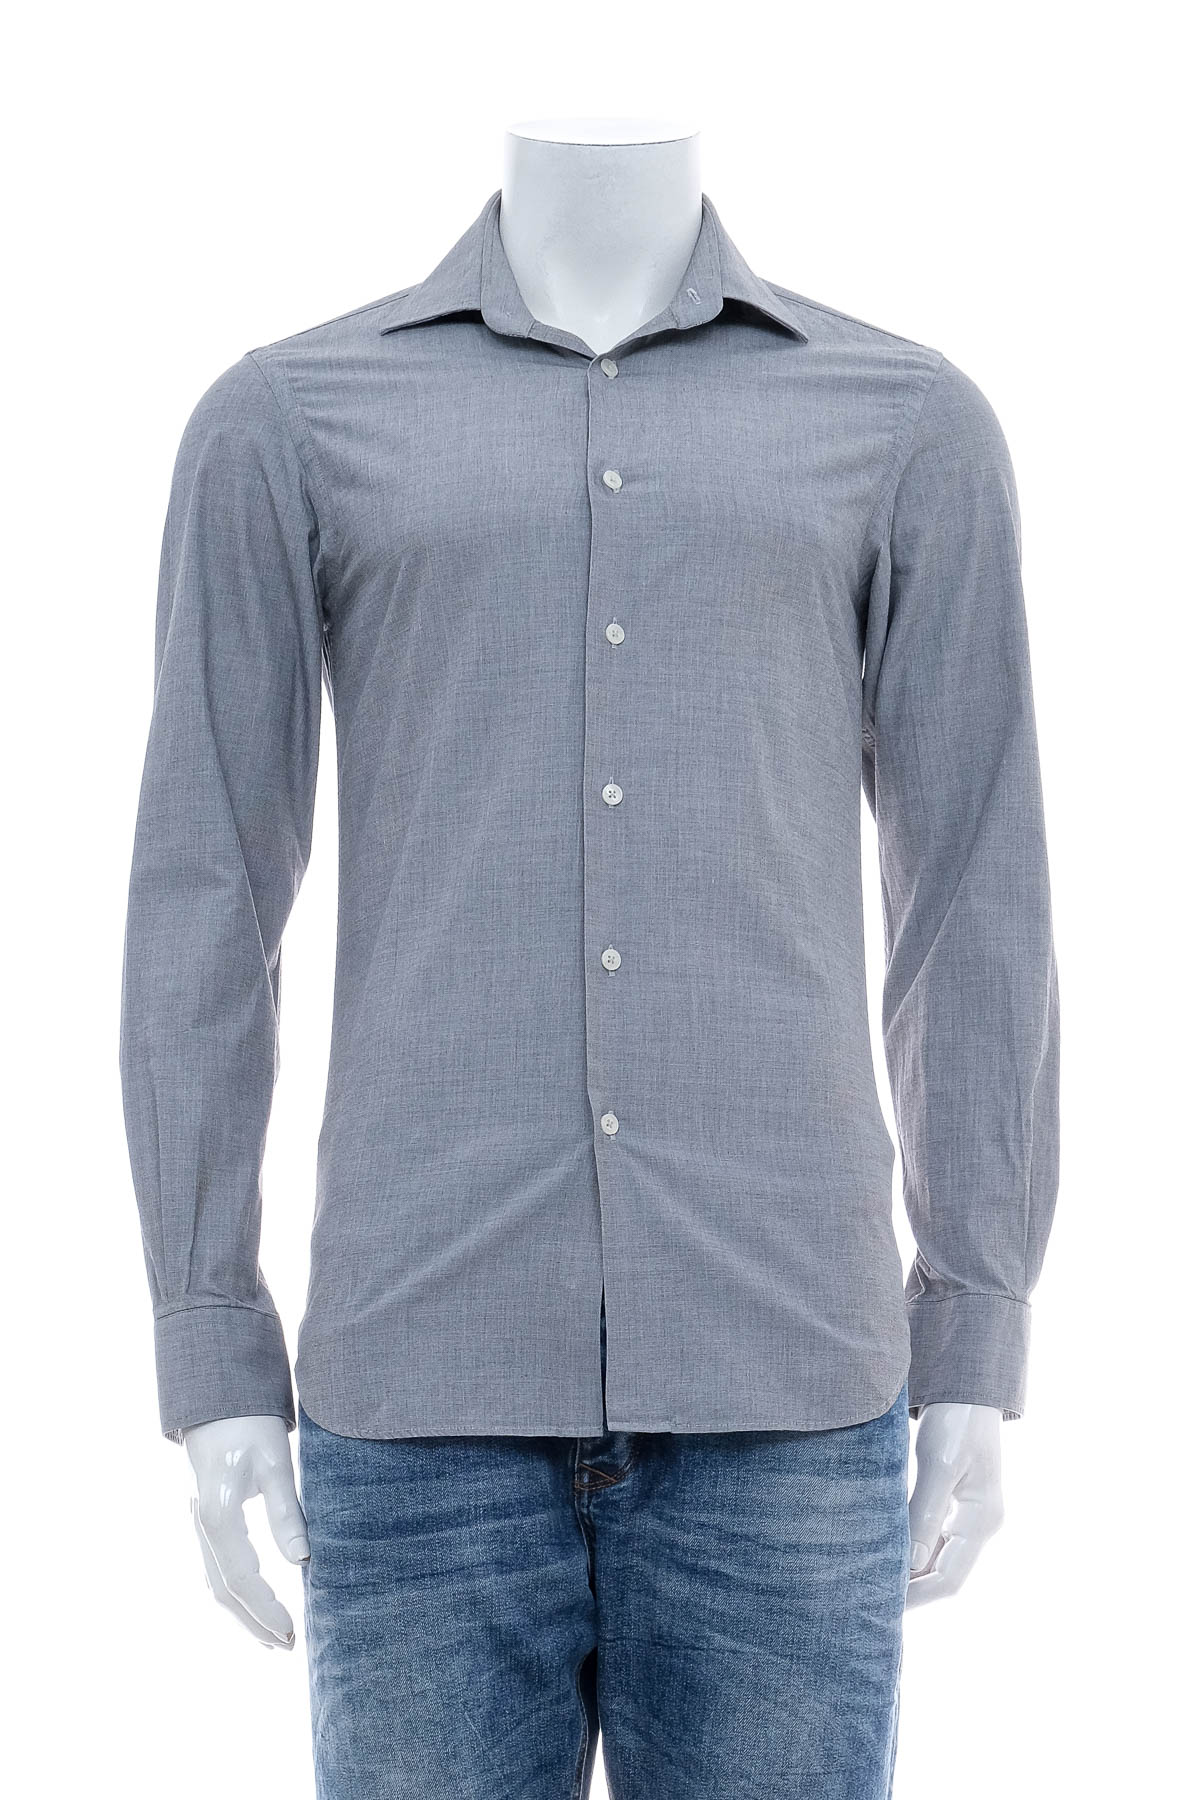 Men's shirt - Calvin Klein - 0